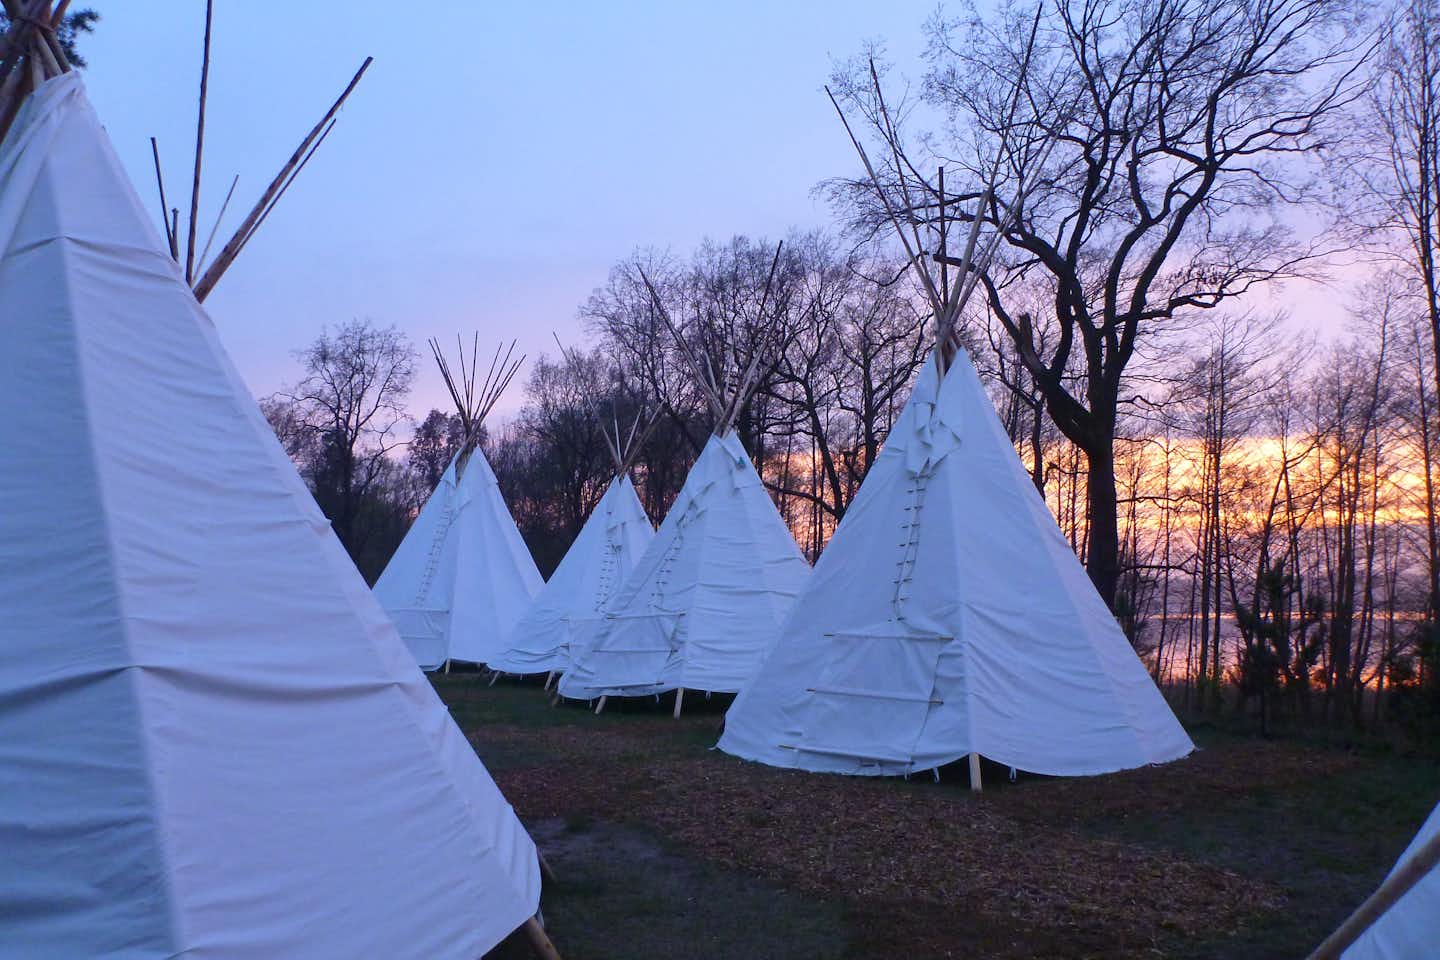 Schwielowsee-Camping - Tipi Zelte auf dem Campingplatz